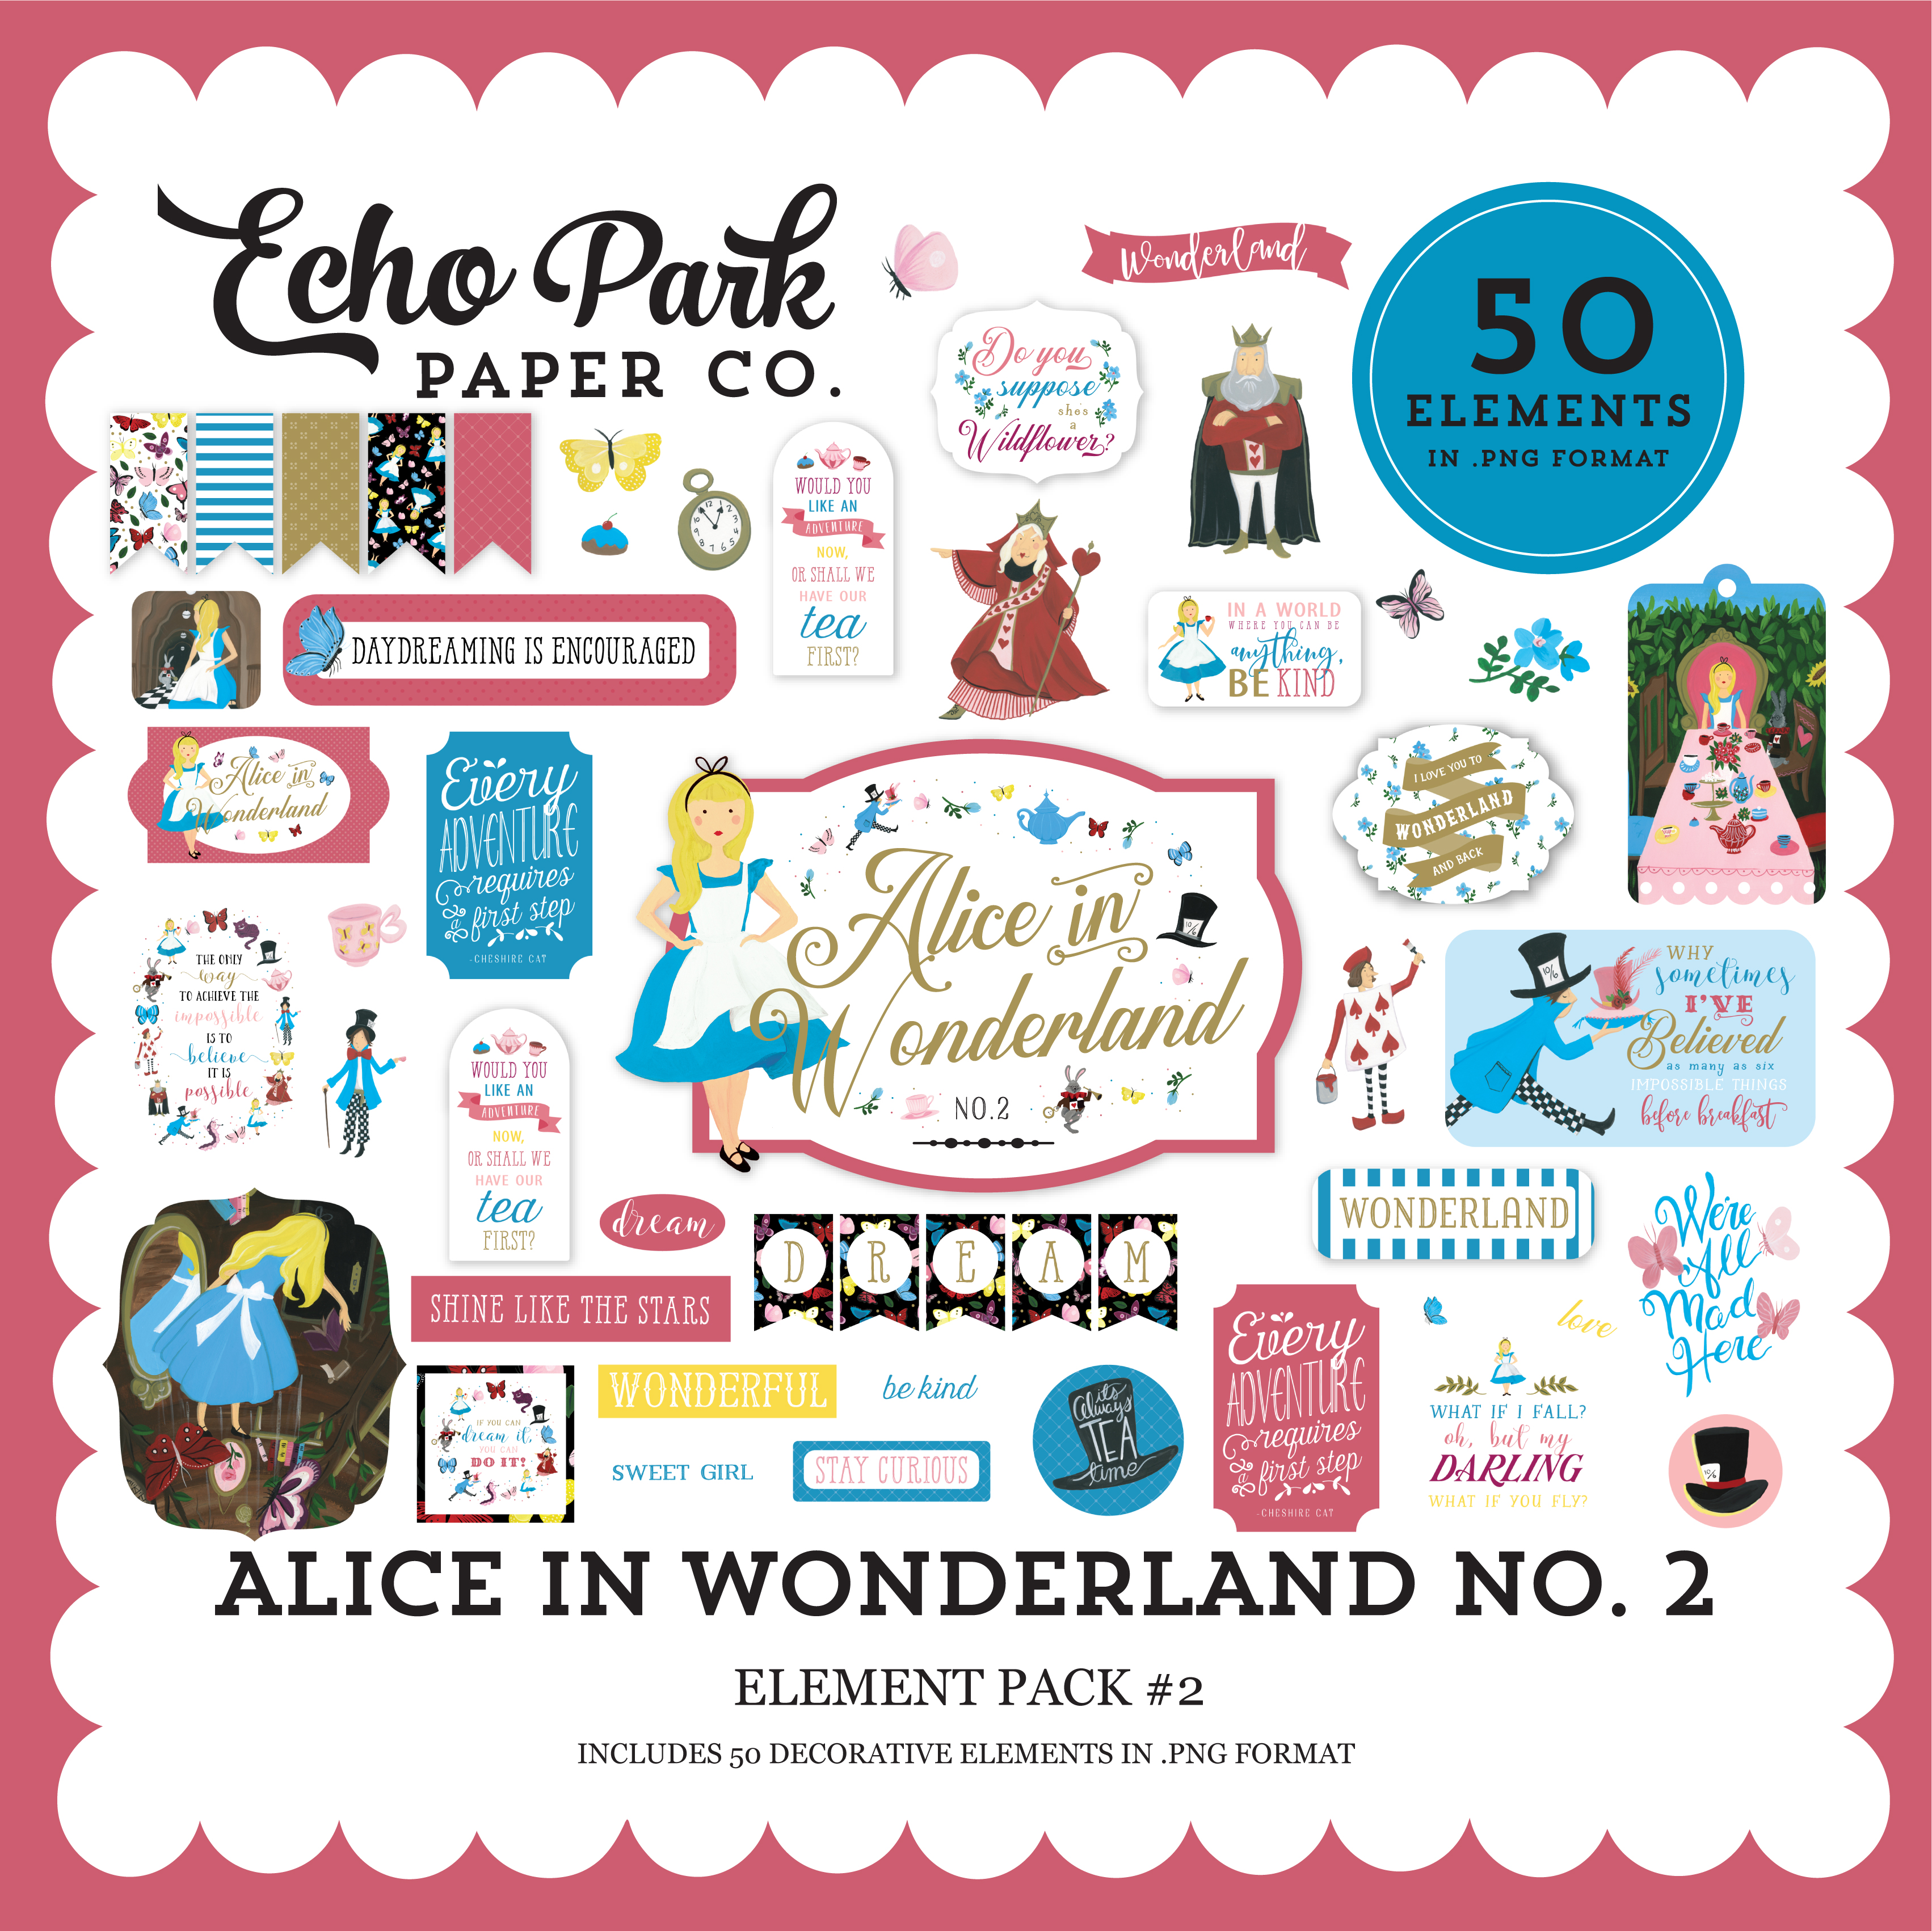 Alice in Wonderland No. 2 Element Pack #2